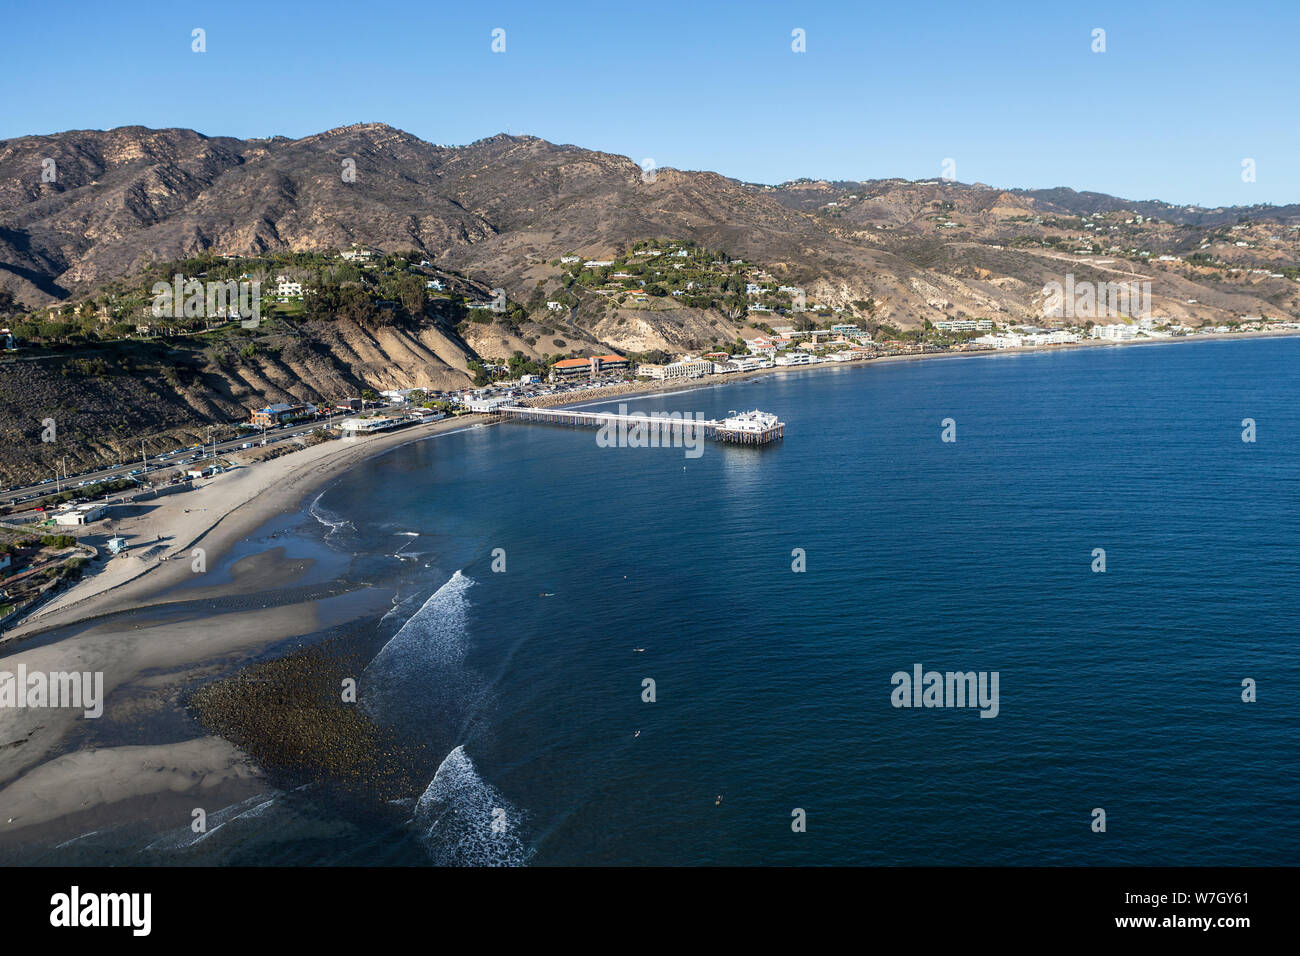 De l'antenne Surfrider Beach, Malibu Pier et de la montagnes de Santa Monica au nord de Los Angeles en Californie du Sud. Banque D'Images